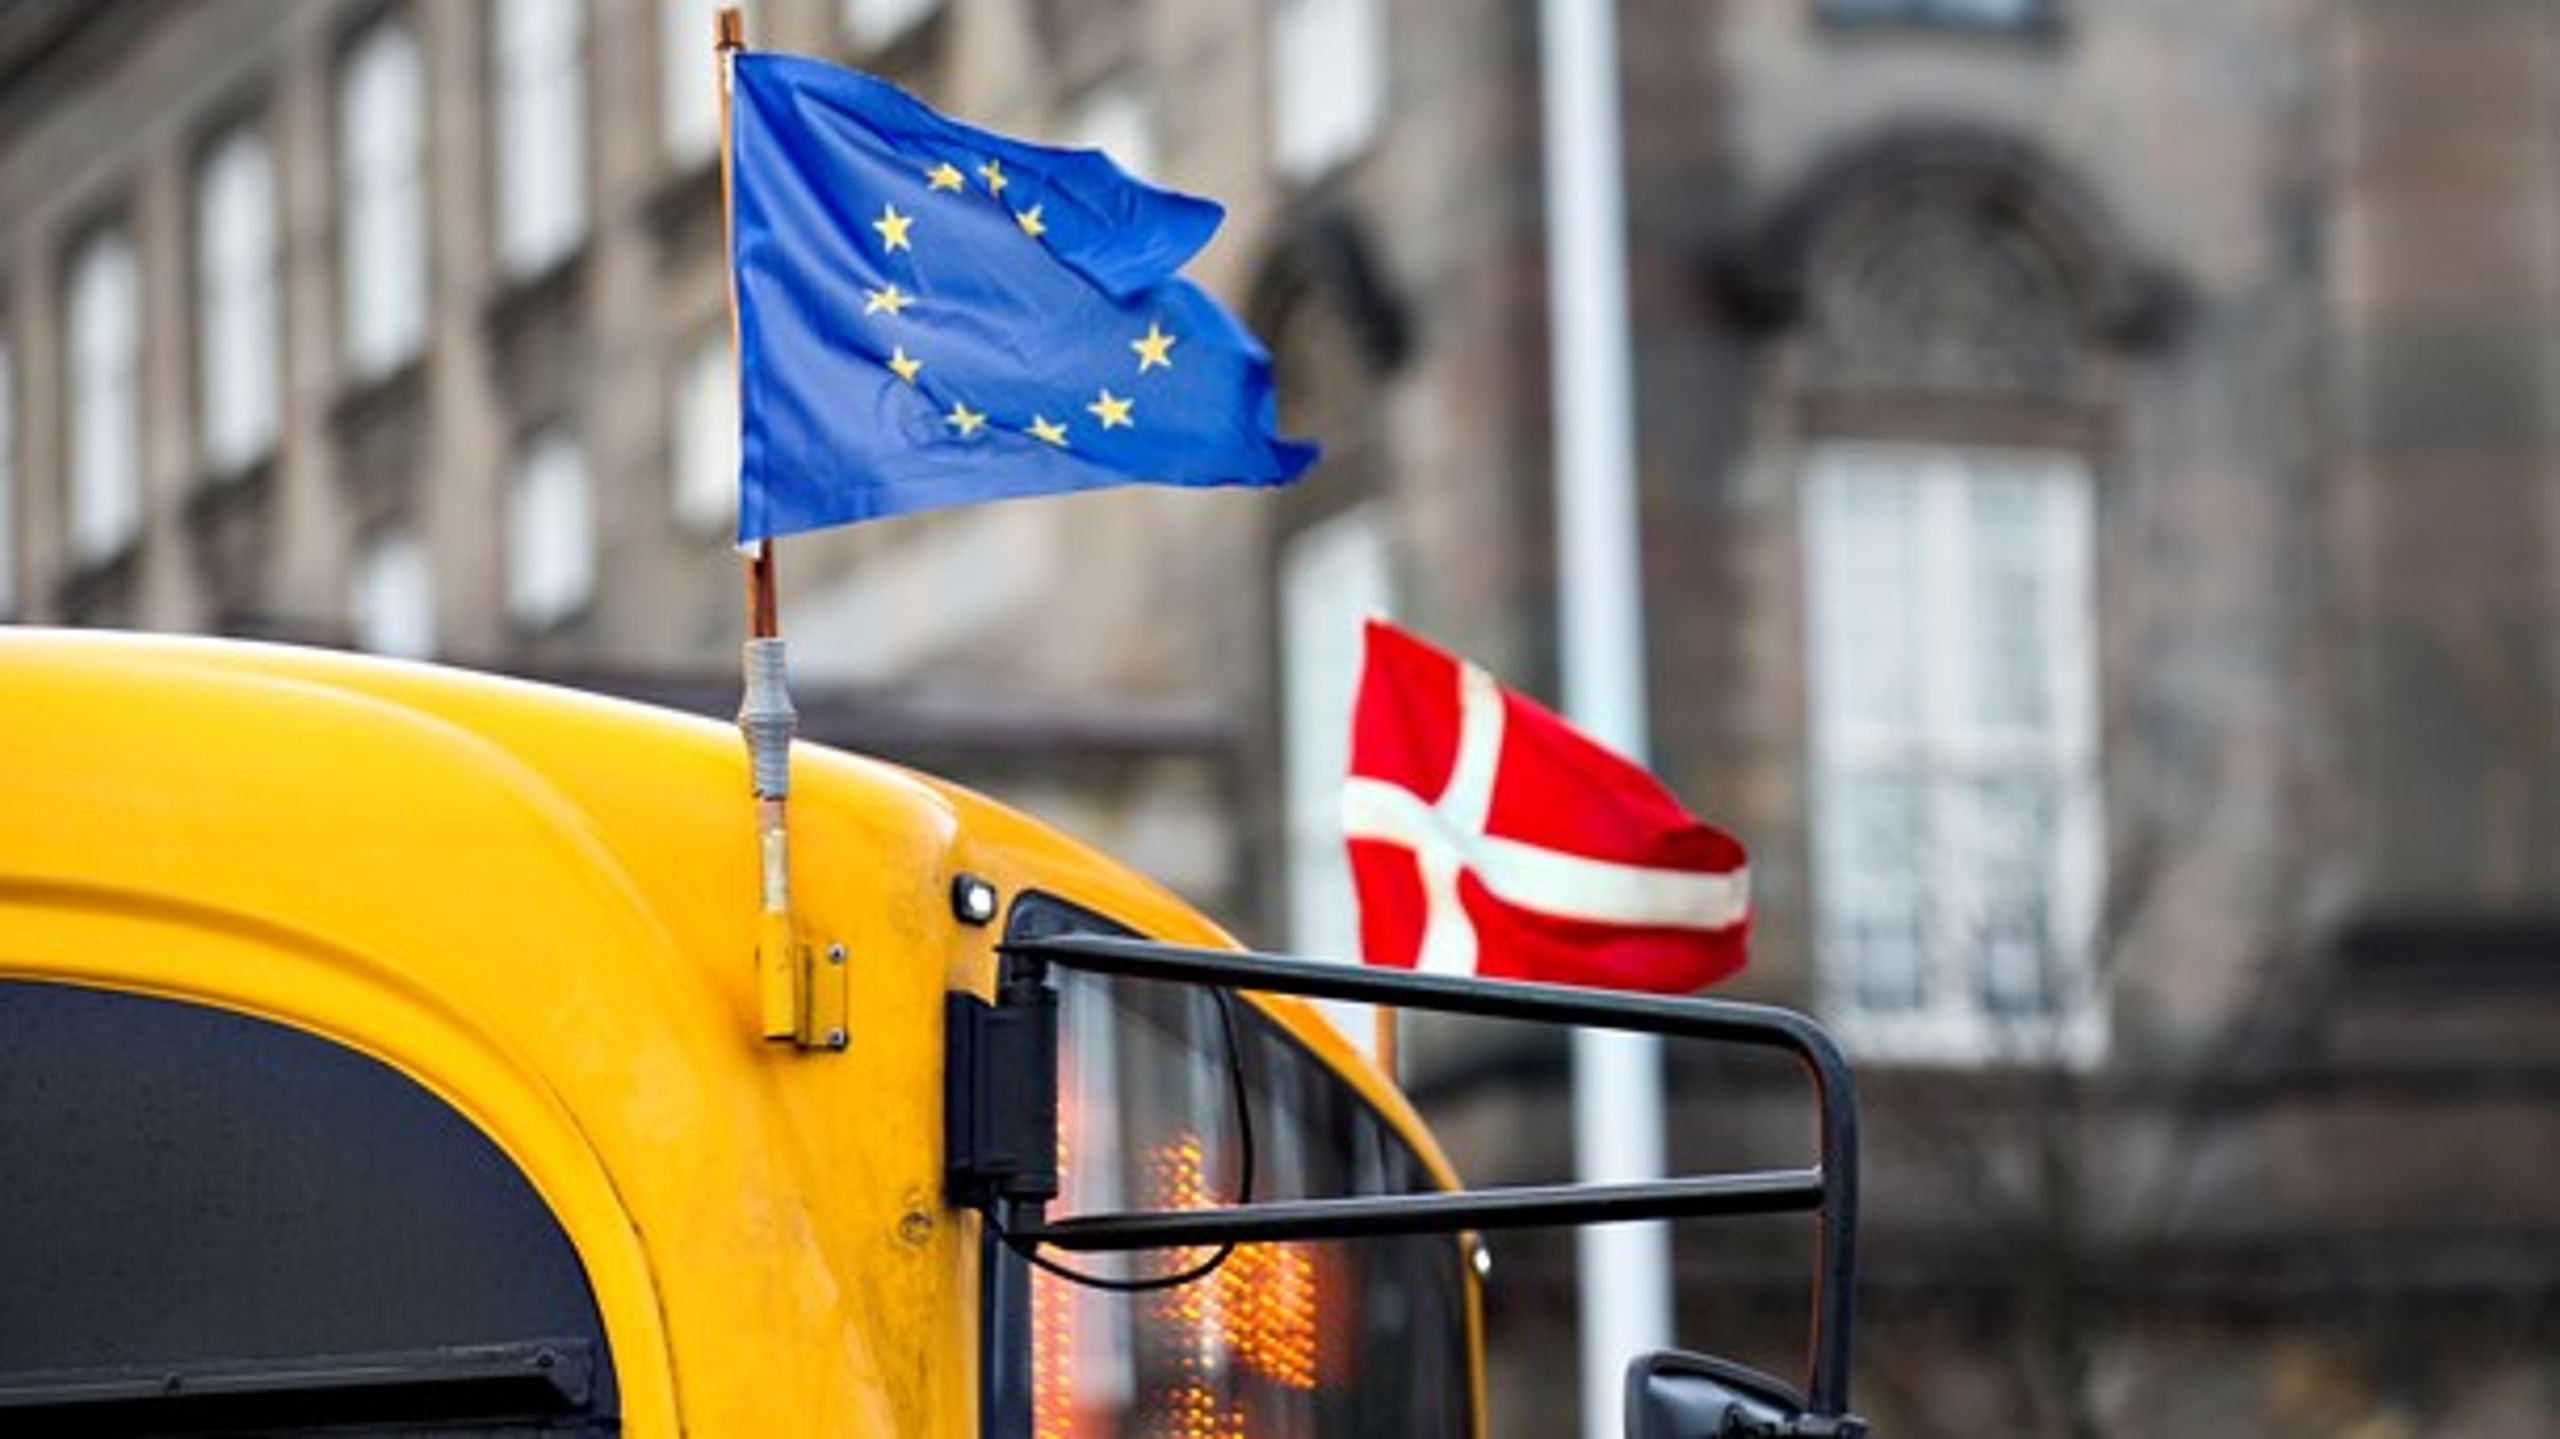 Danmark og EU er ifølge et flertal af danskerne et godt match. Hvis danskerne skulle stemme om medlemskab af EU i morgen, vil 55 procent af danskerne ifølge Epinion stemme ja til EU. 28 procent vil ifølge målingen stemme sig ud af EU.